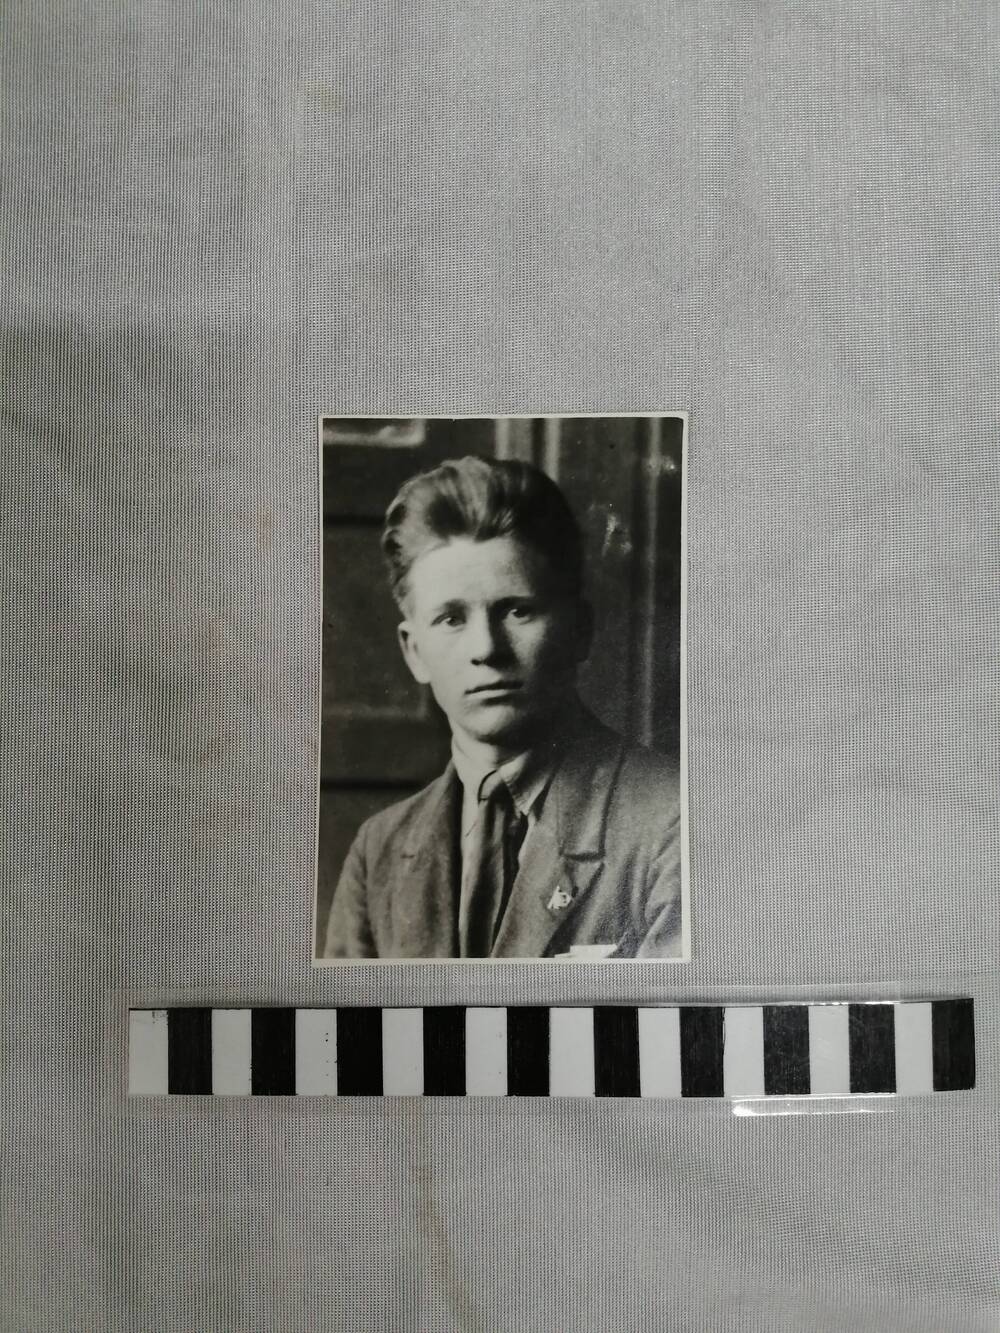 Фото, оригинал, погрудный портрет, изображение черно-белое на матовой бумаге. Изображен Каратаев Георгий Тимофеевич